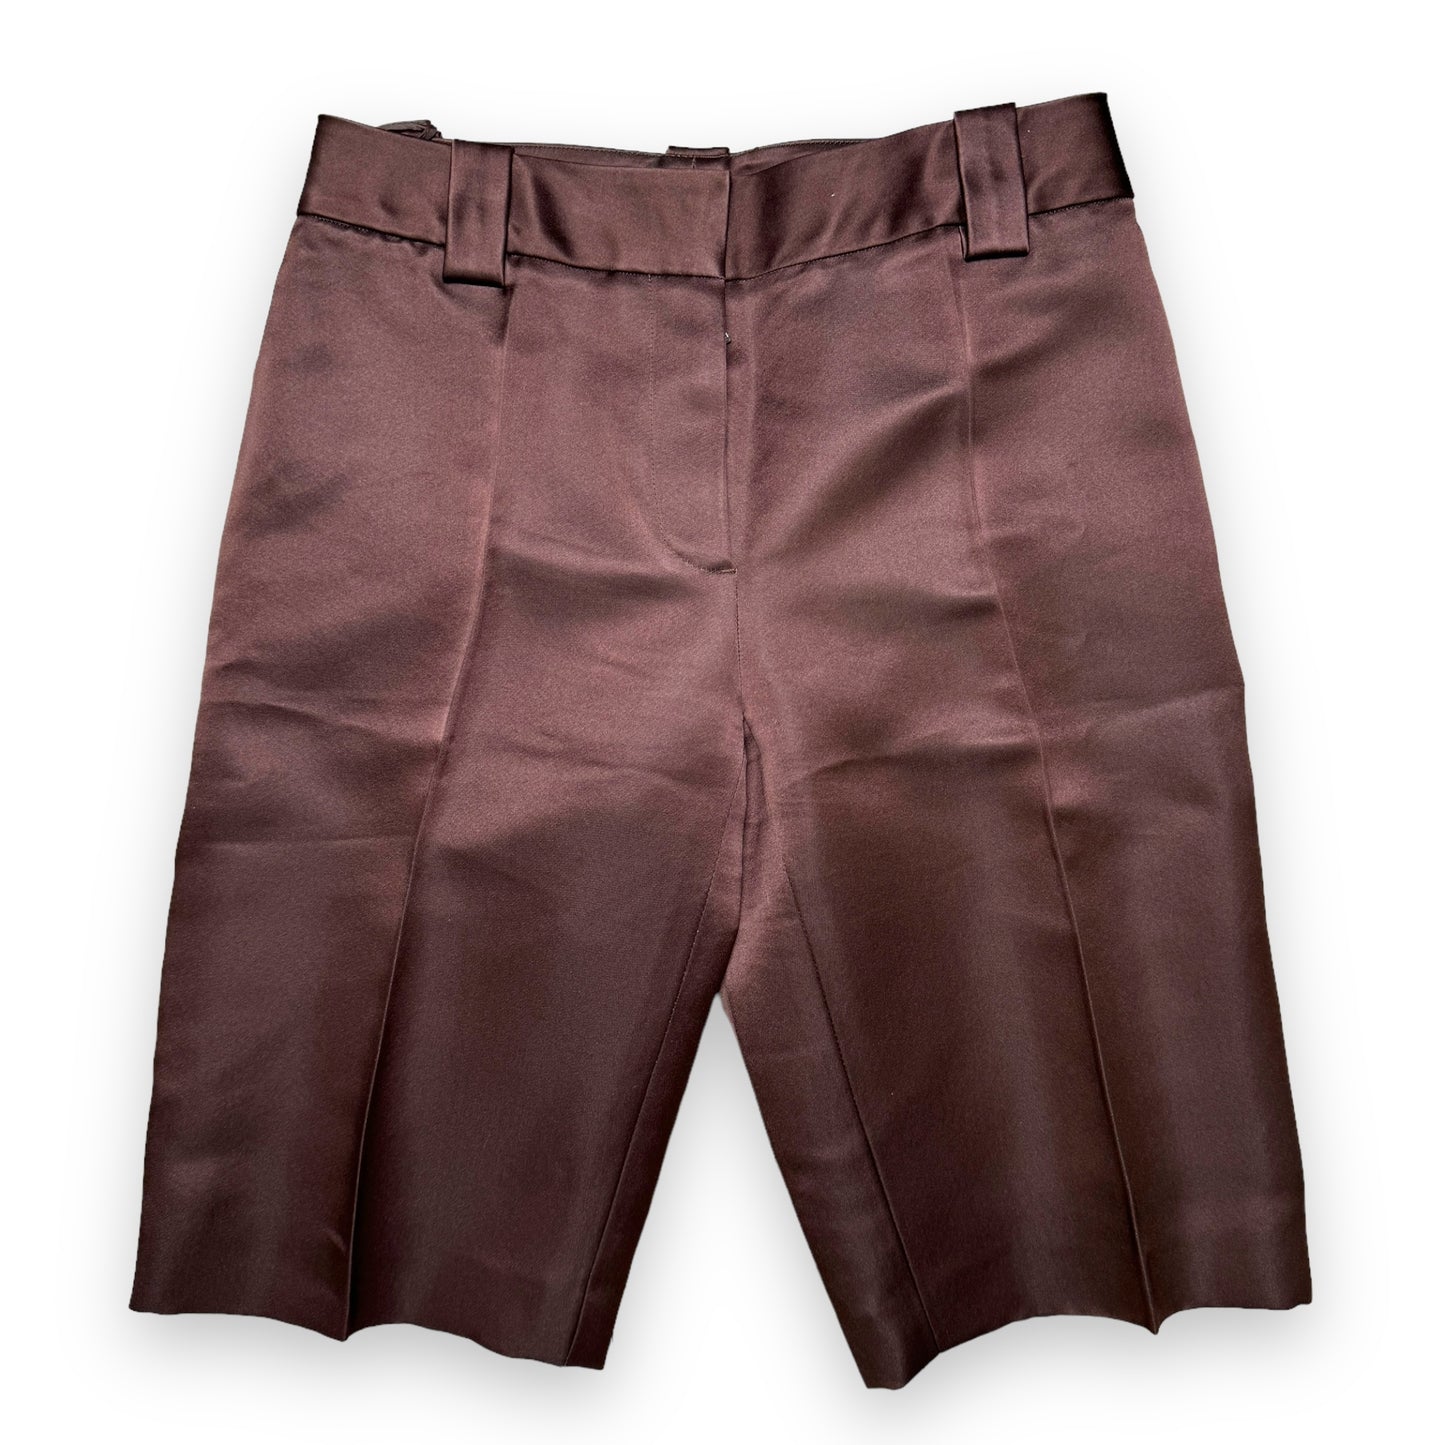 Prada Brown Silk Shorts - 2019 Runway